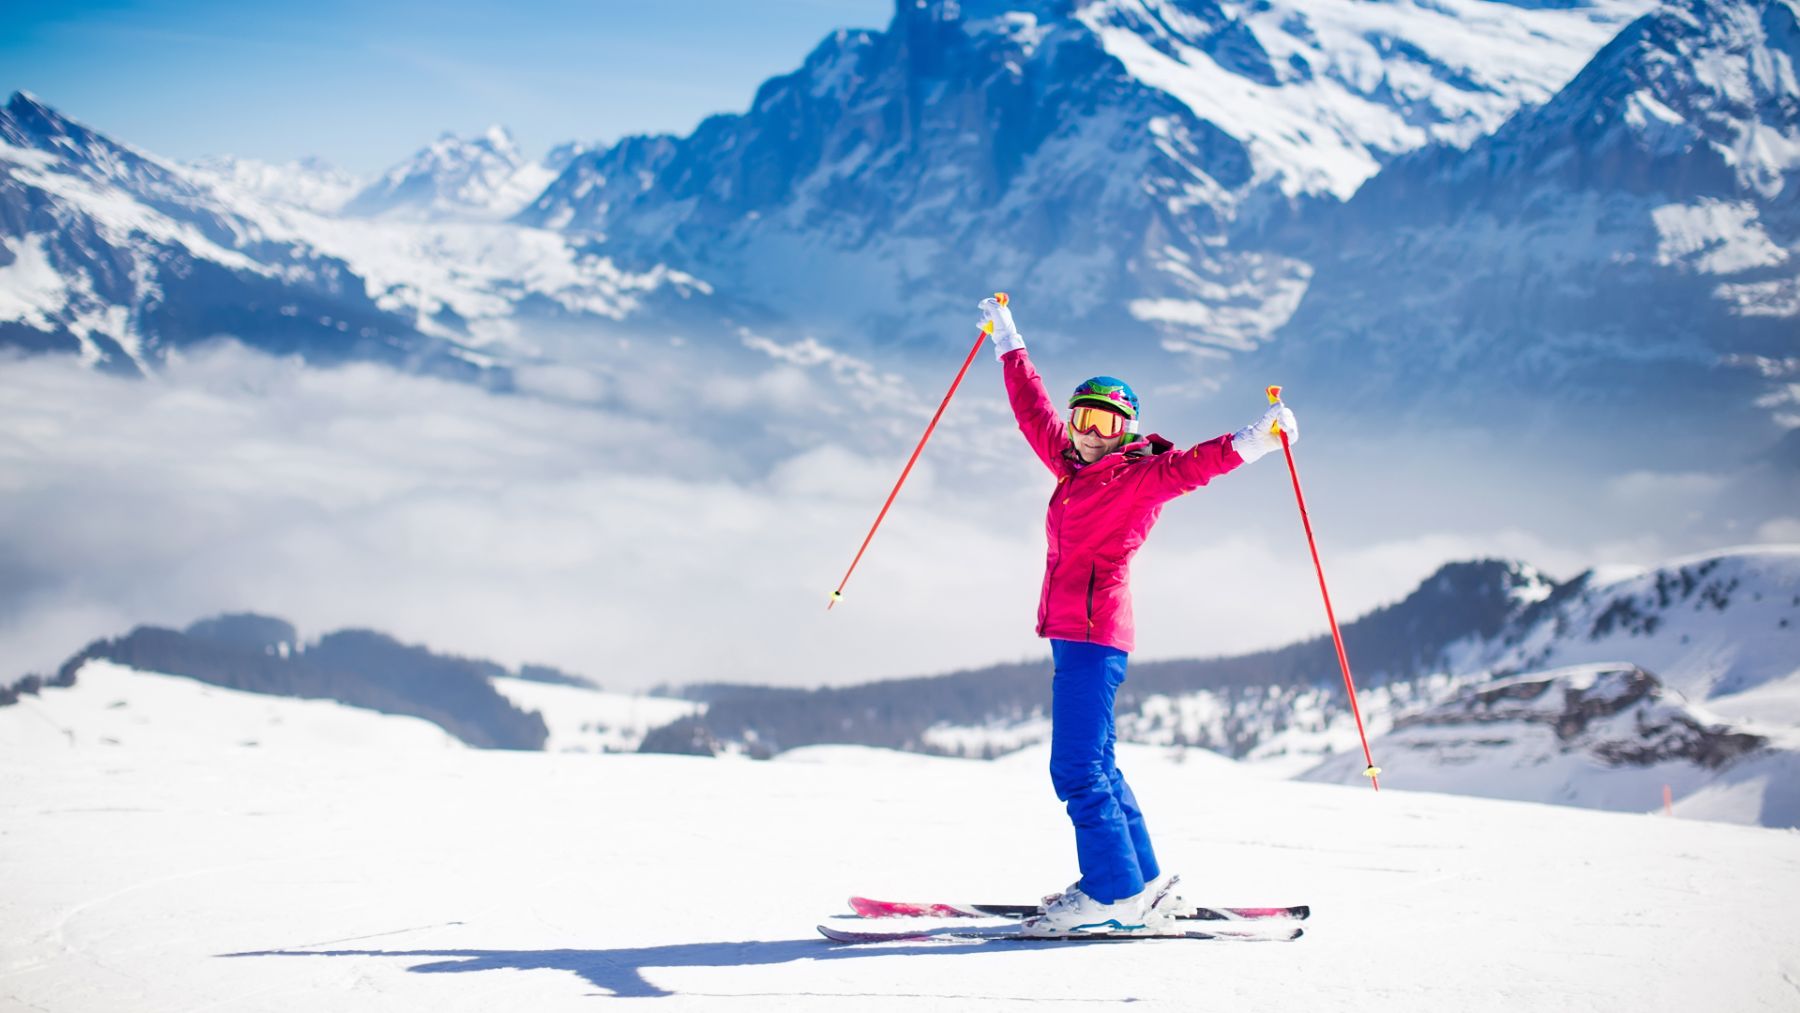 Las mejores ofertas en Pantalones de esquí para mujer